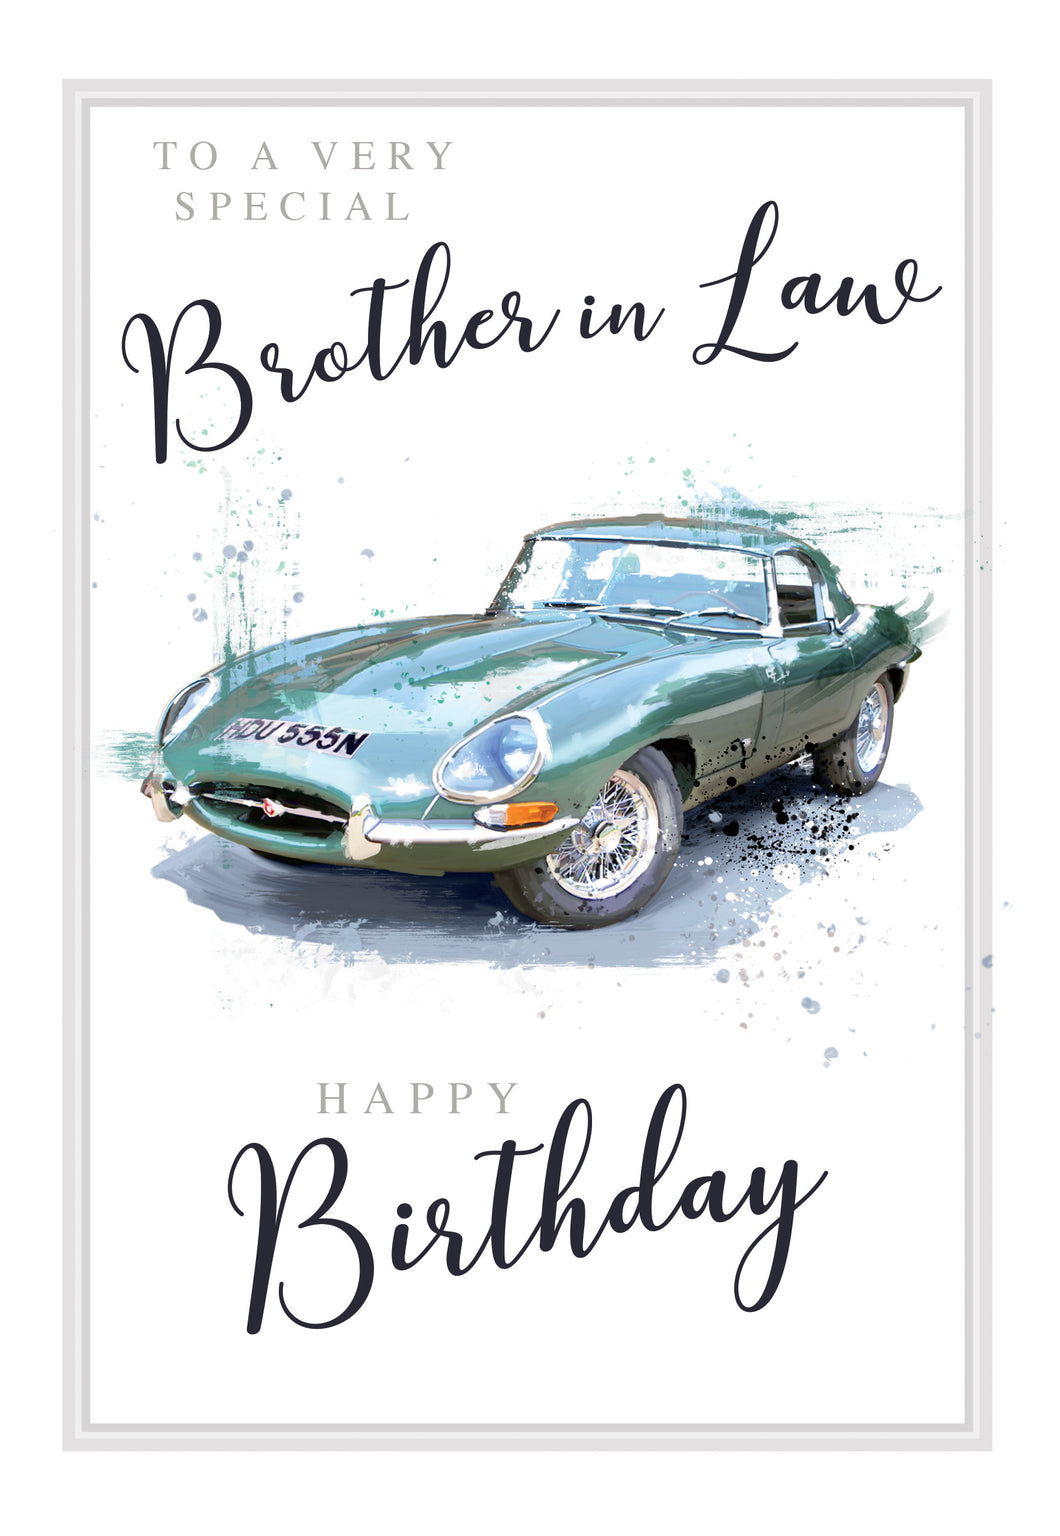 Brother in Law Birthday Card - Birthday Card